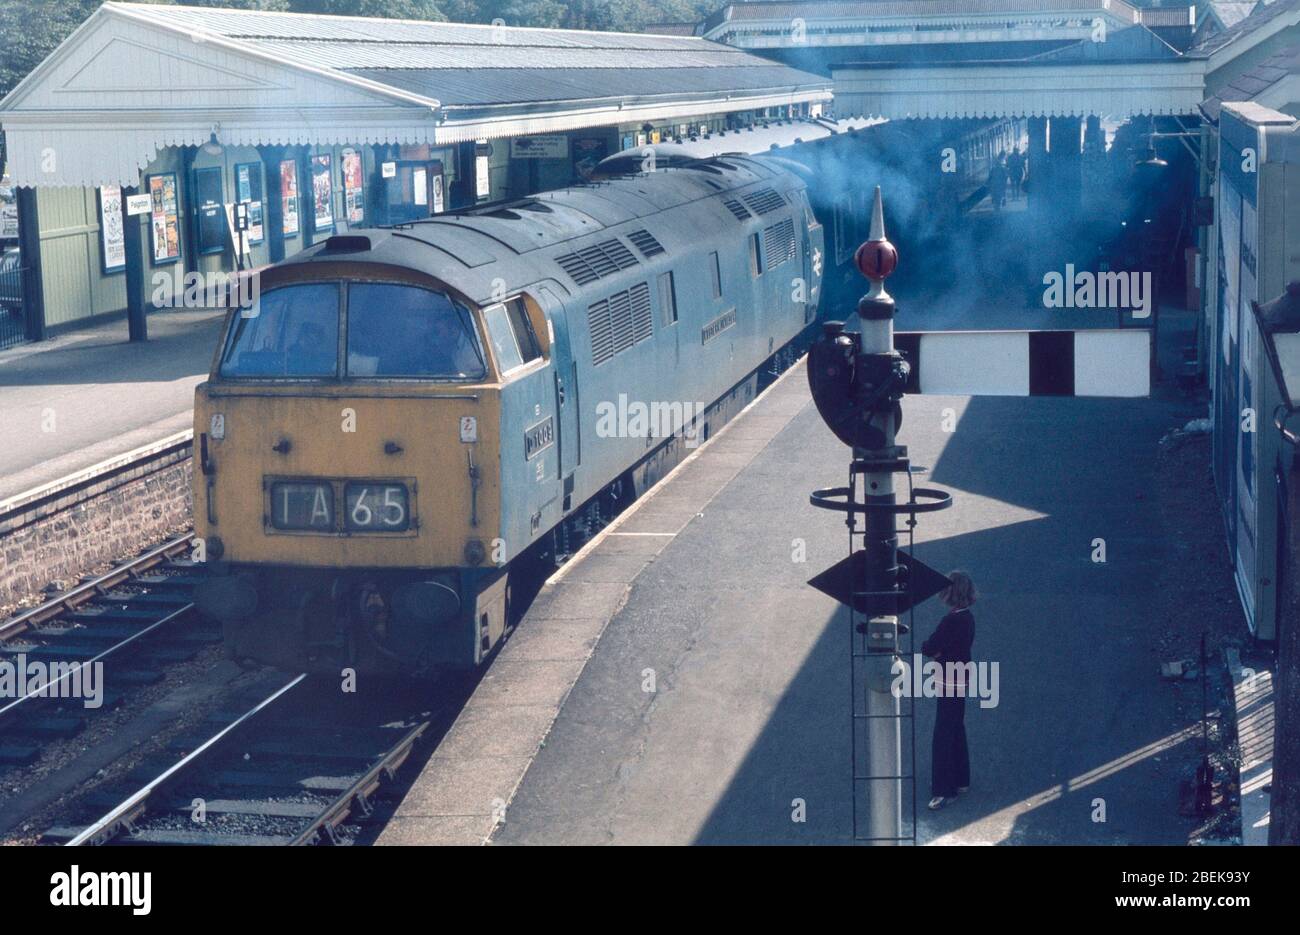 1974, scene on British Railways, UK, Paignton station, south west England Stock Photo